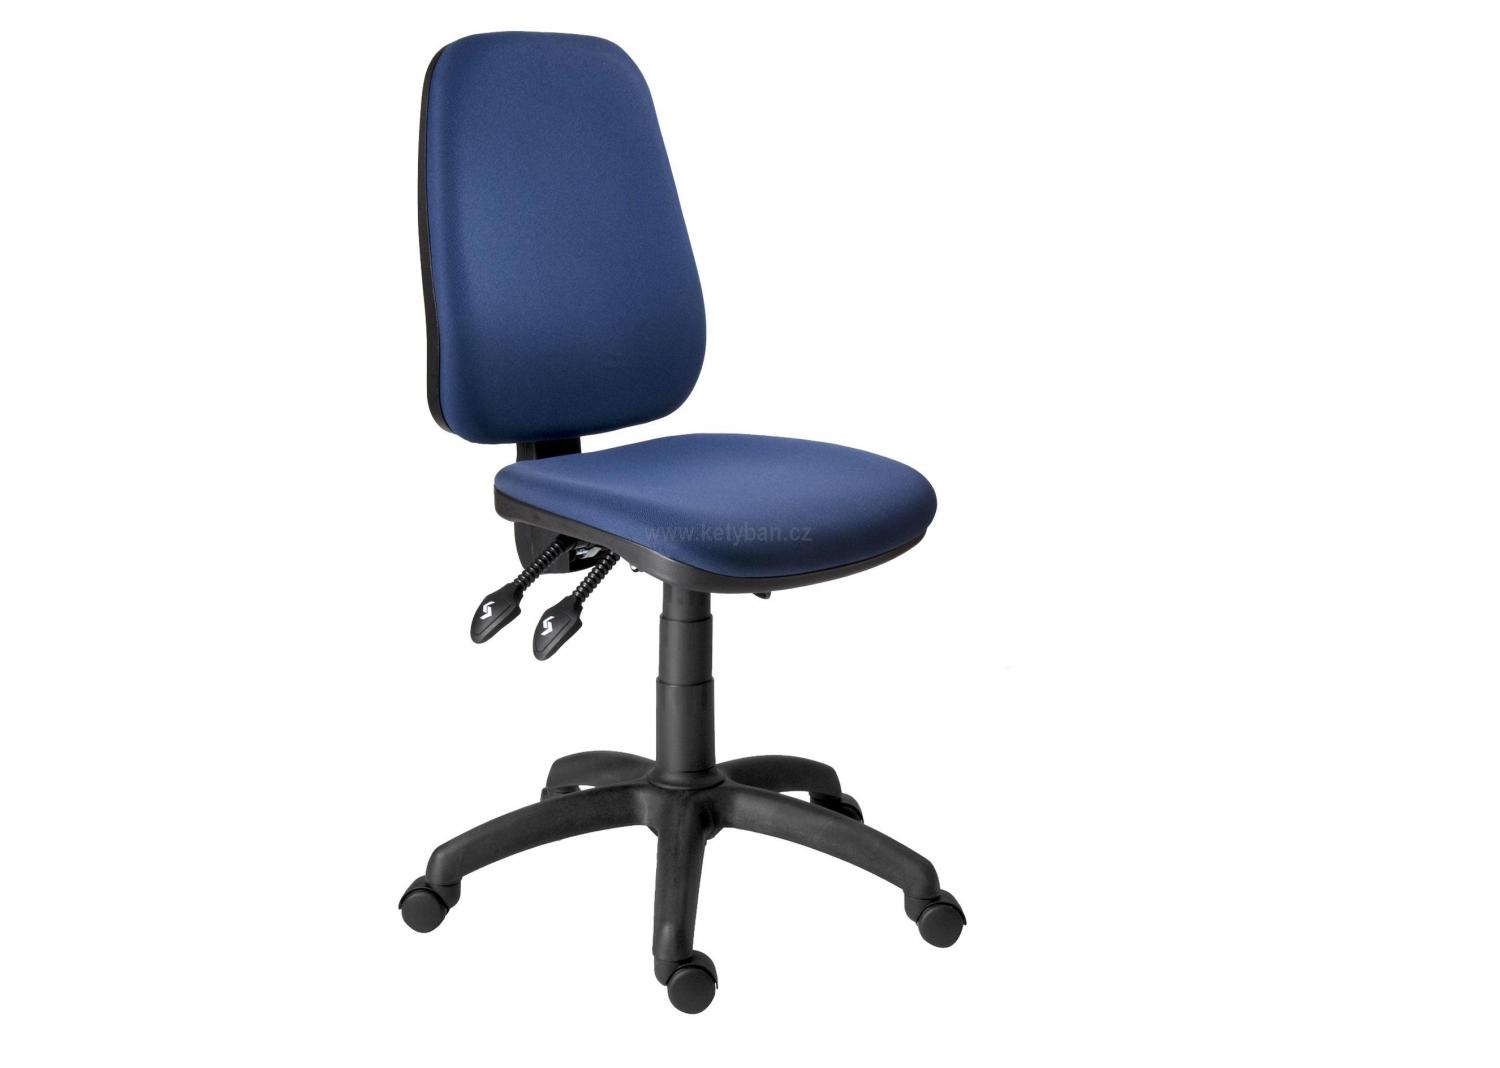 Kancelářská židle 1140 Asyn